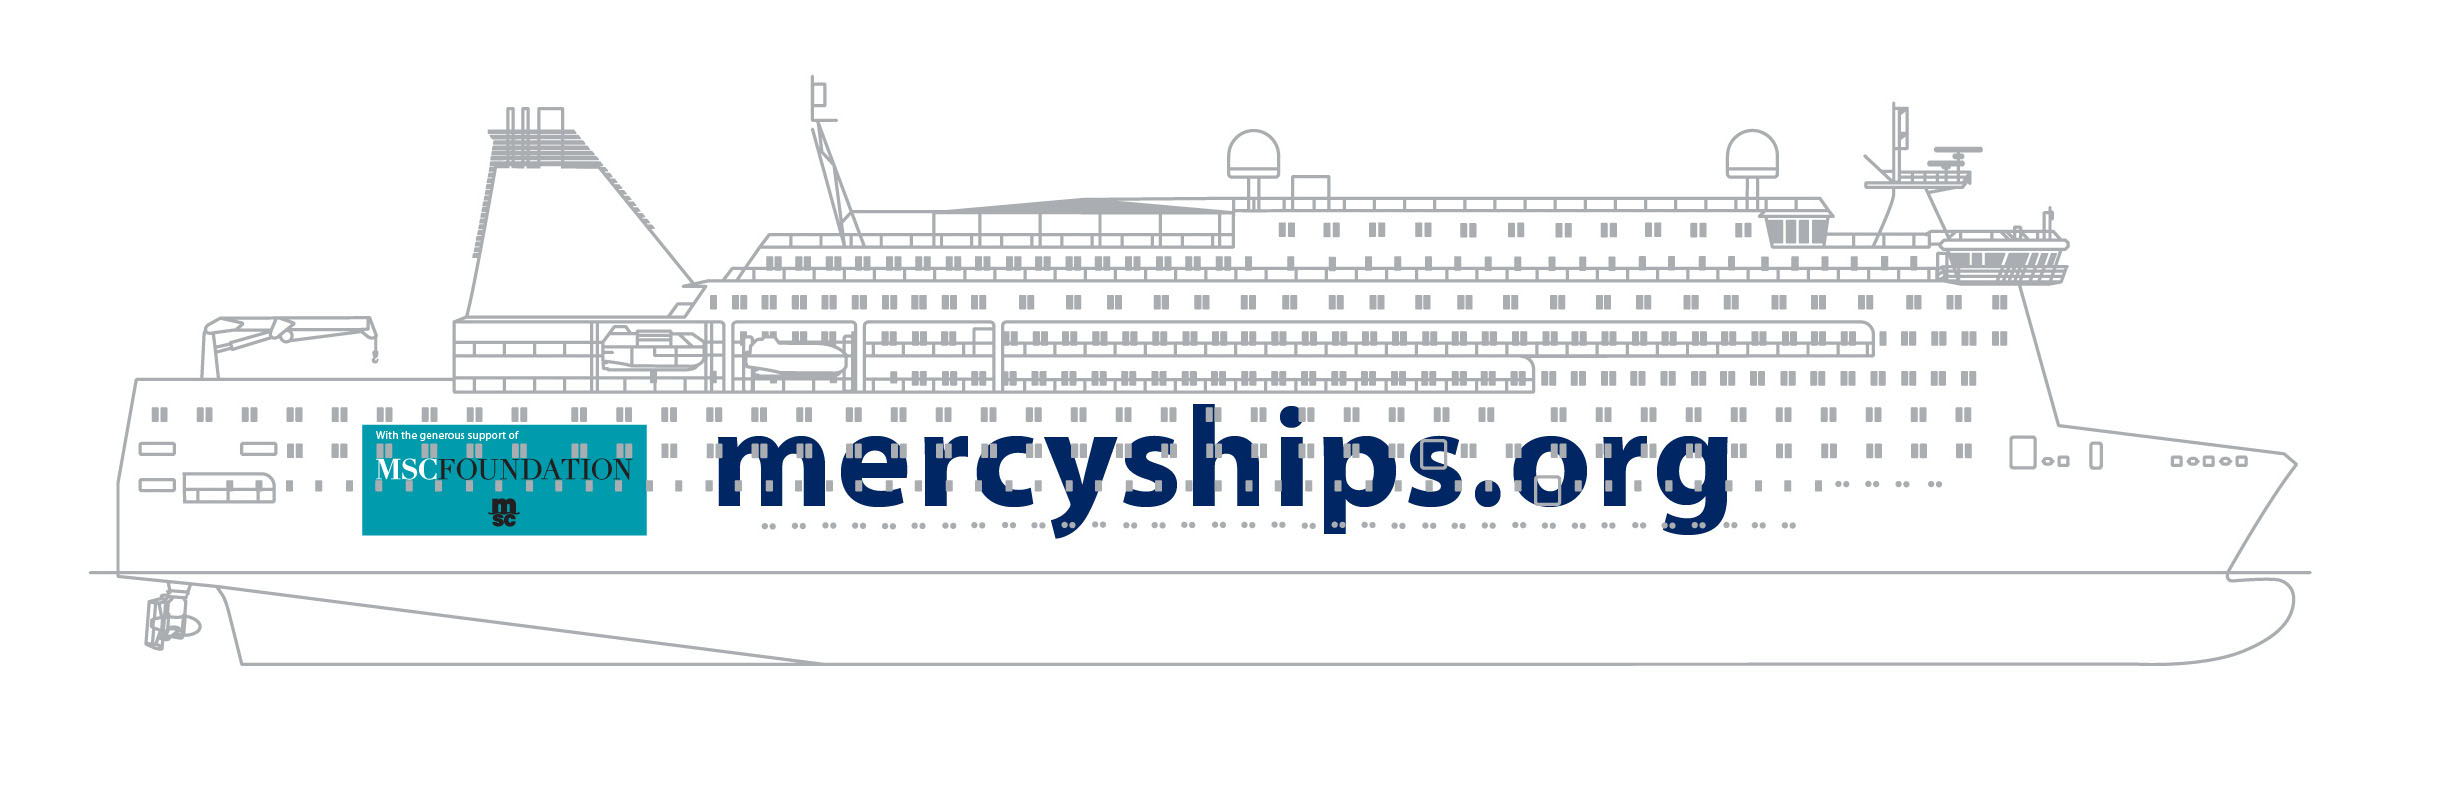 Le nouveau navire-hôpital sera construit sur mesure et selon des spécifications similaires à celles du Global Mercy.